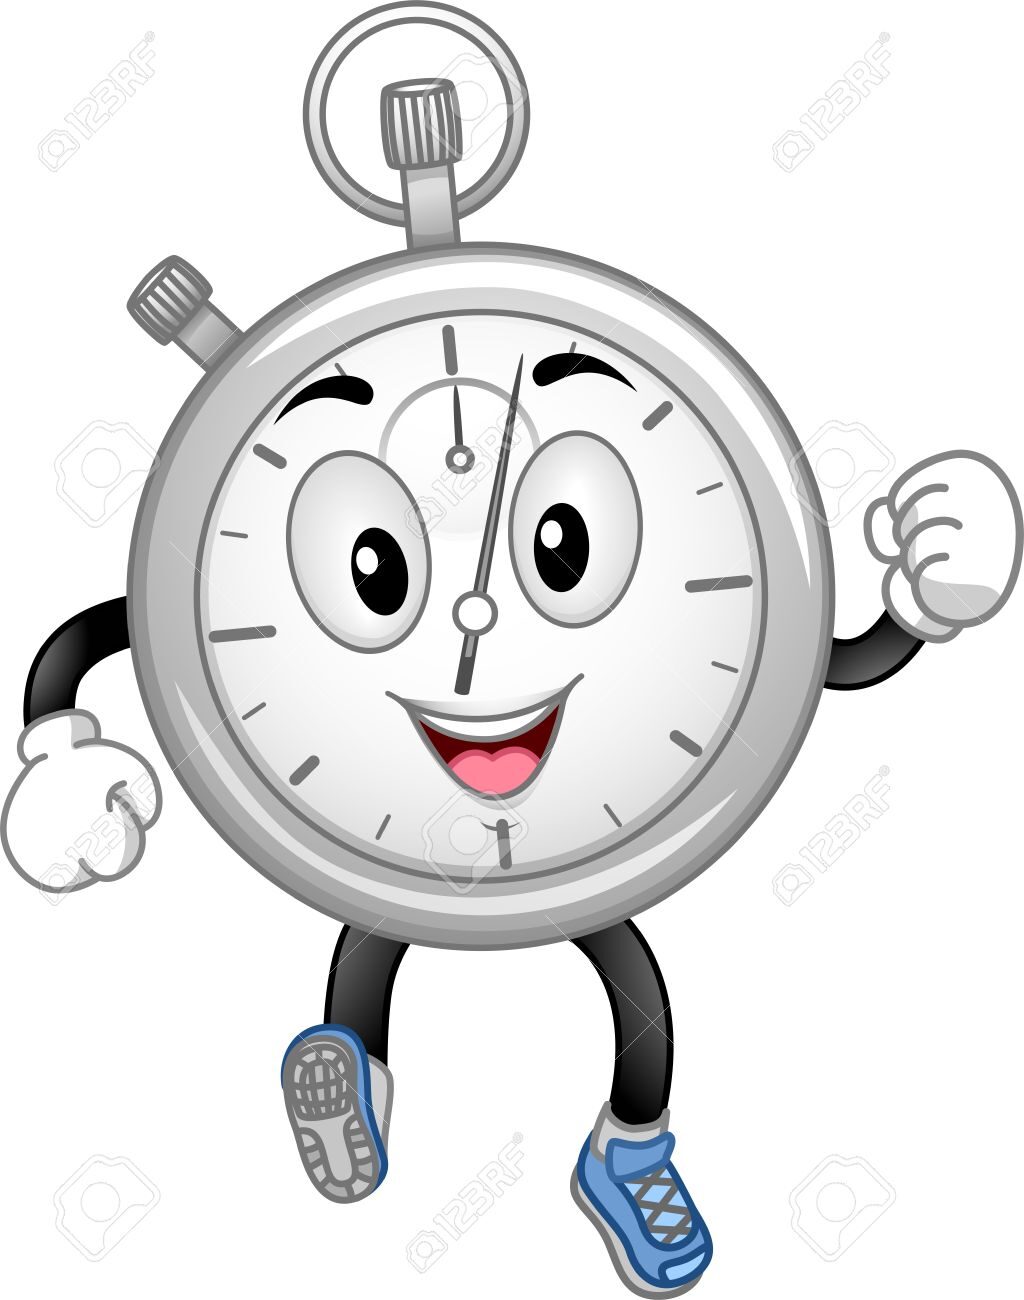 26802973-mascot-illustration-doté-d-un-chronomètre-en-marche.jpeg